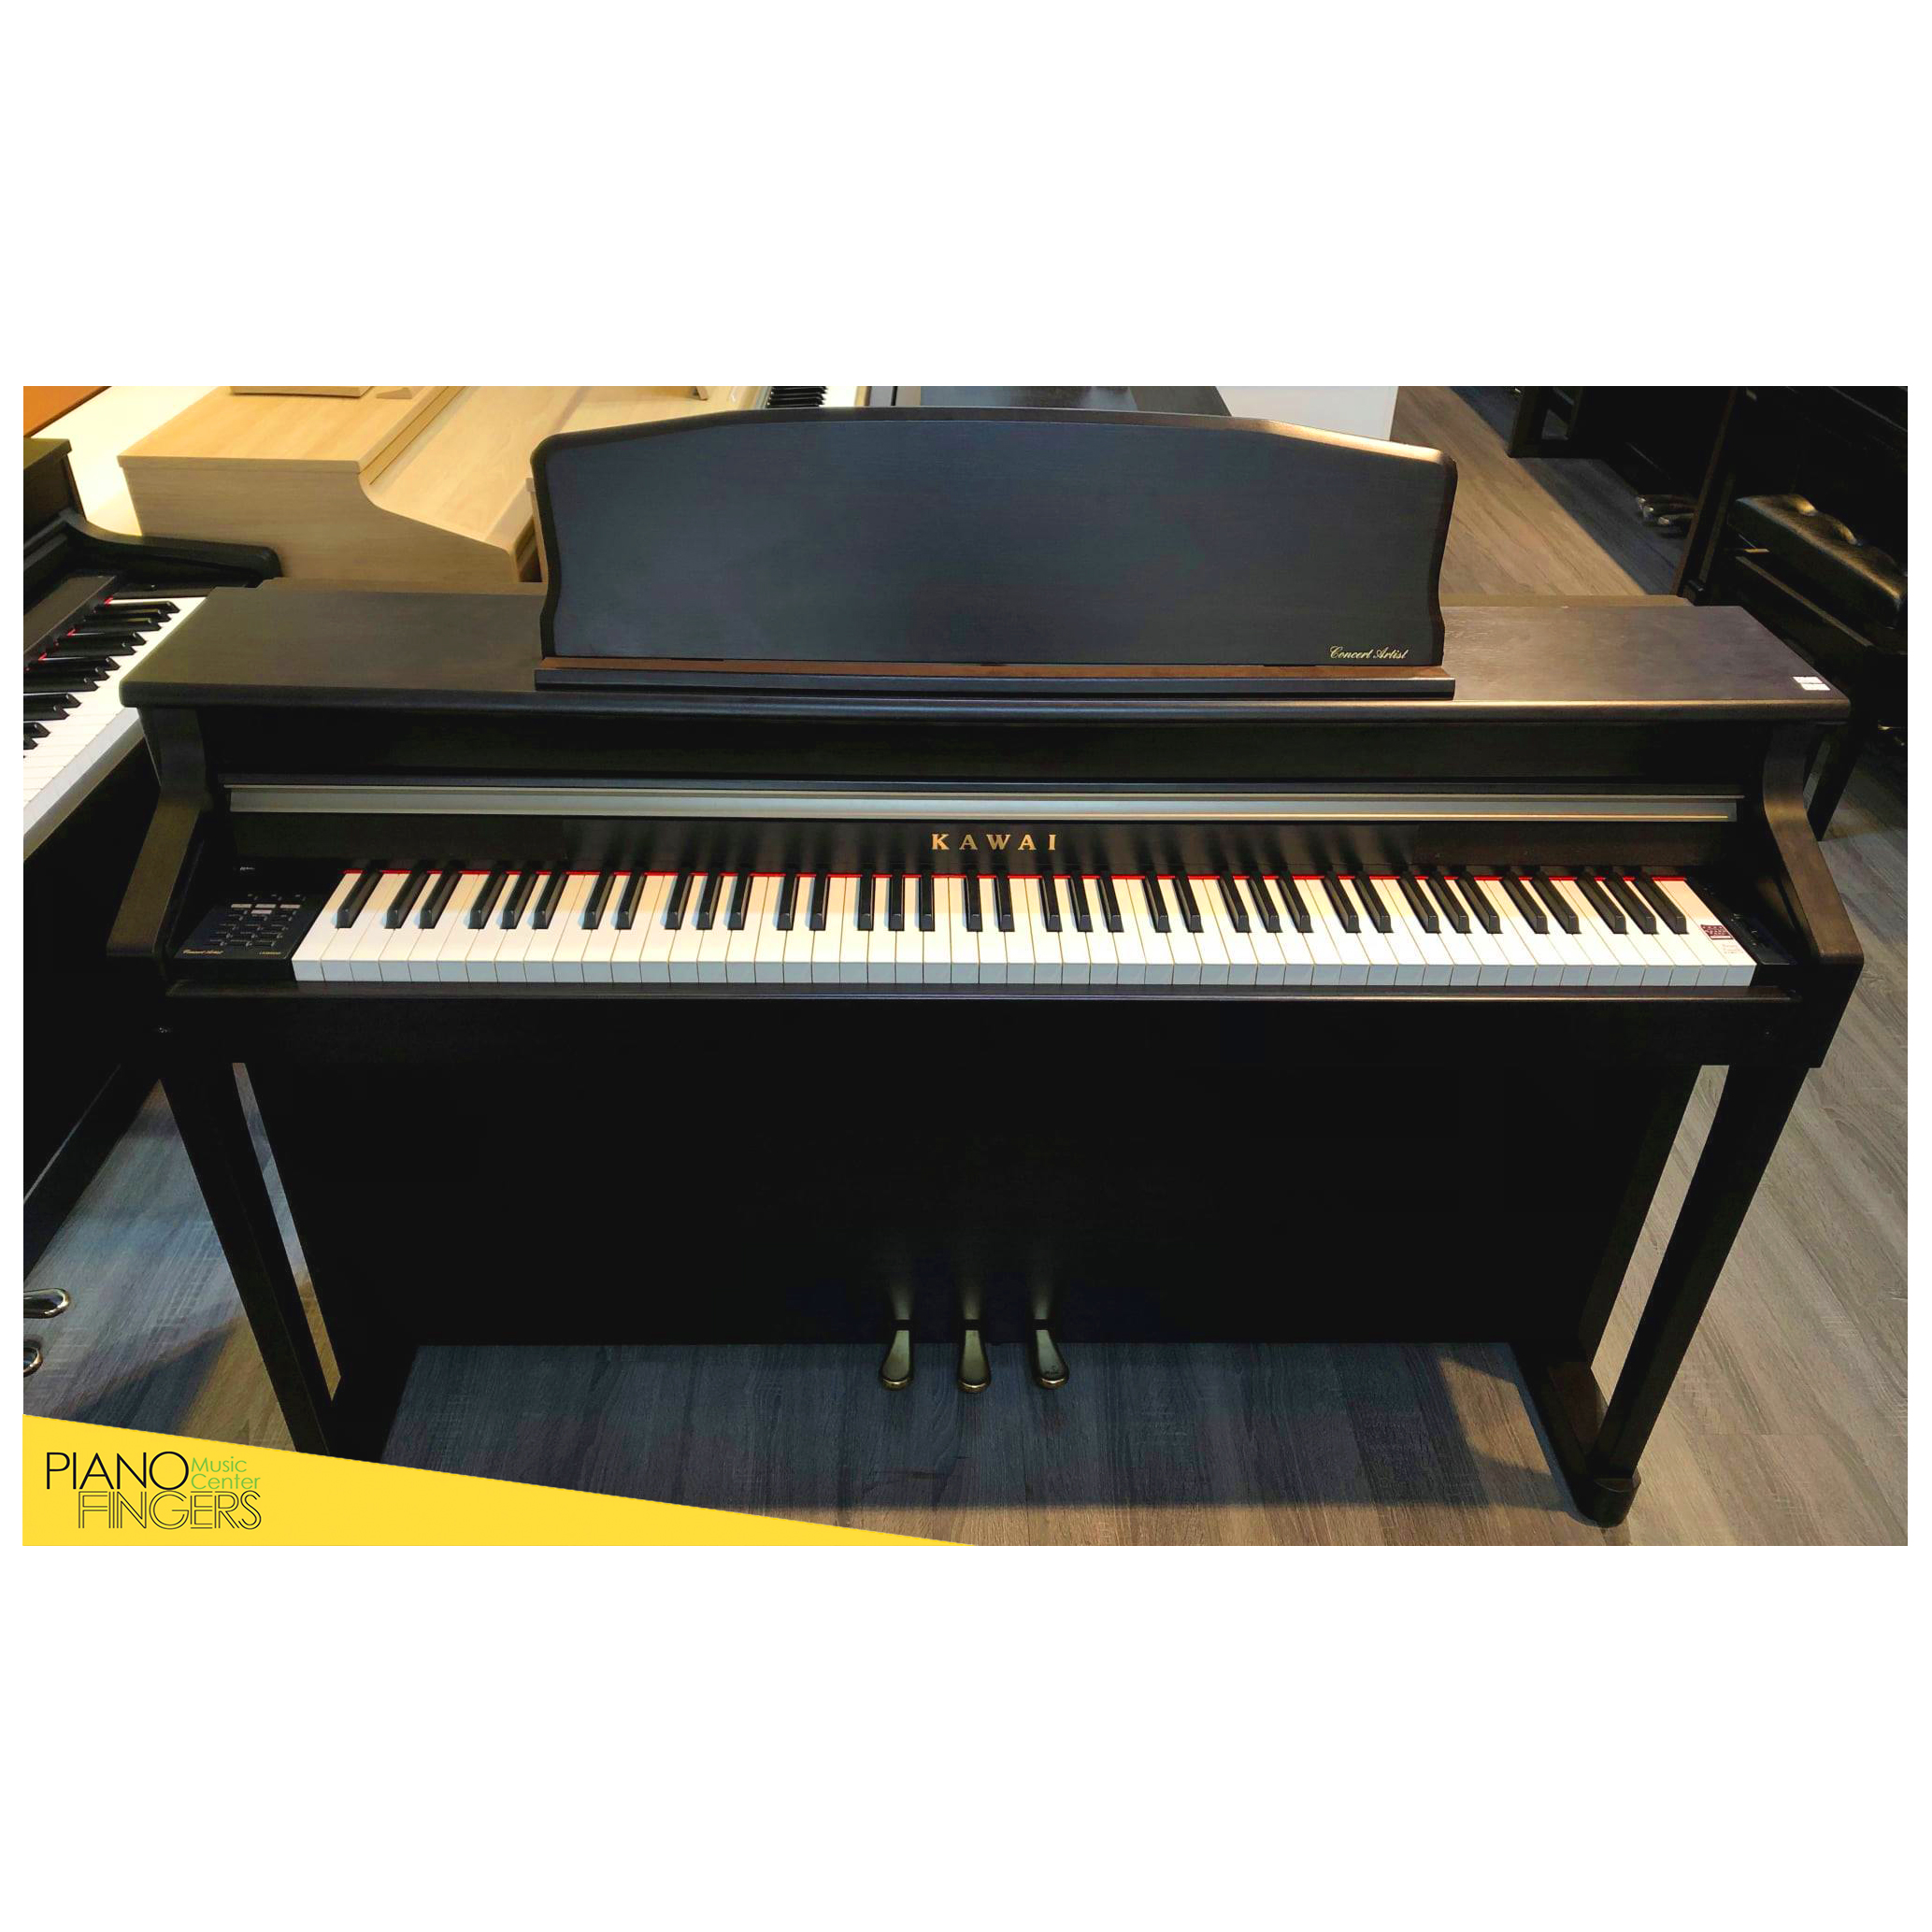 Piano điện Kawai CA 95